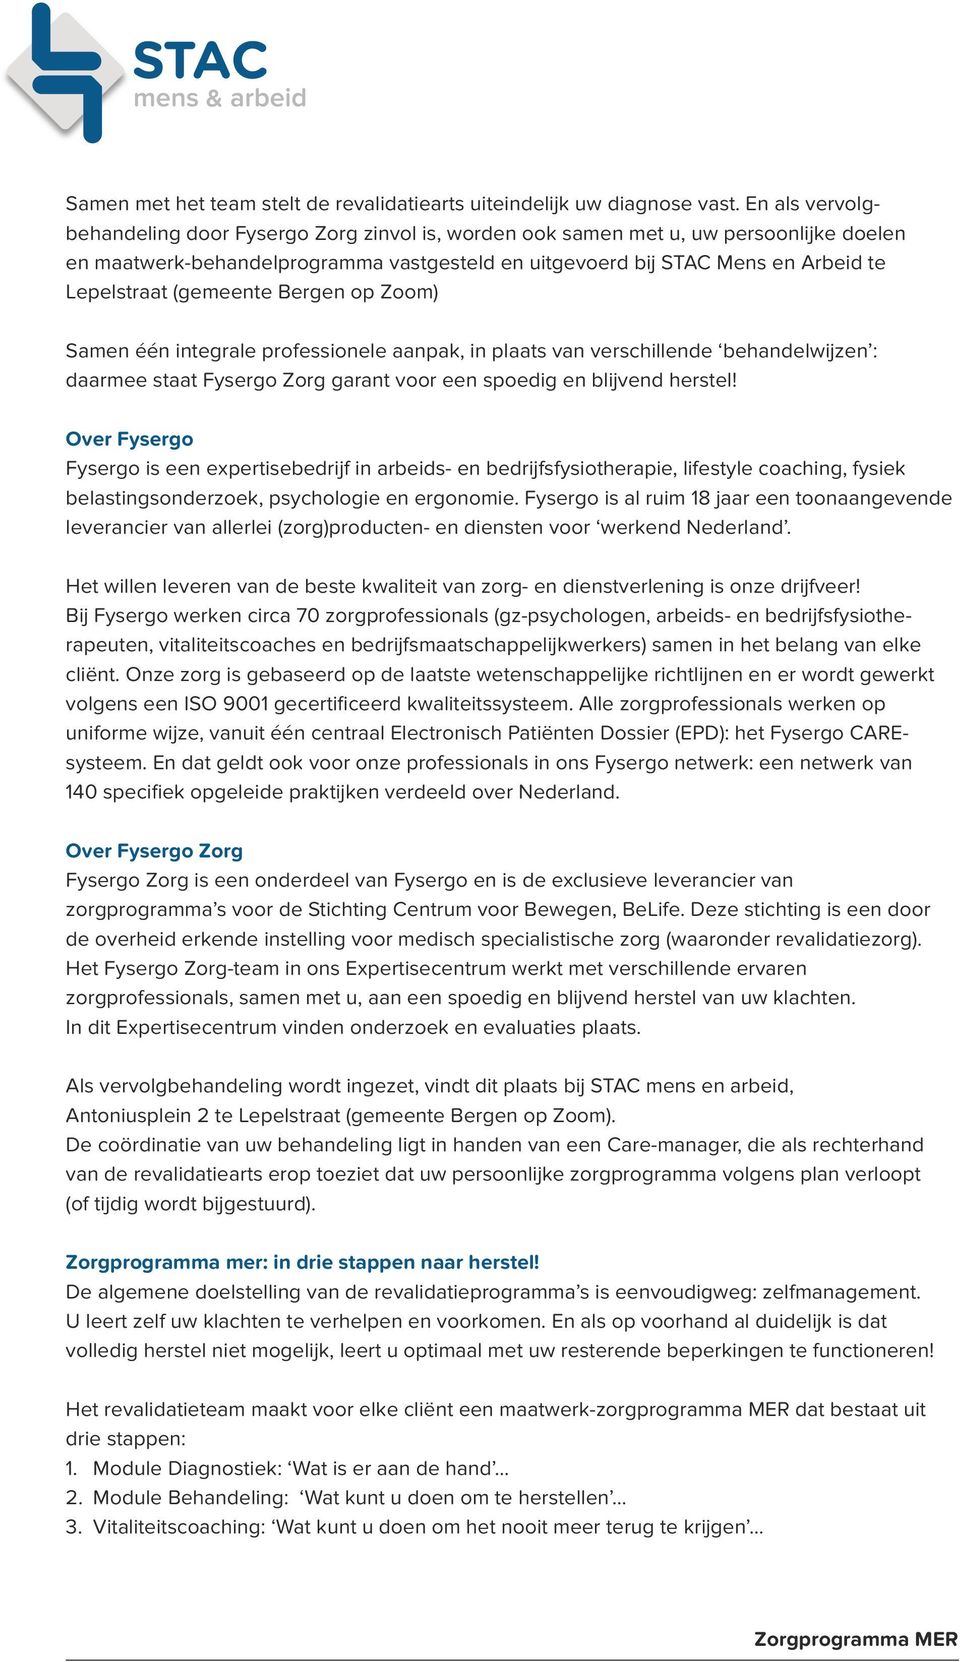 (gemeente Bergen op Zoom) Samen één integrale professionele aanpak, in plaats van verschillende behandelwijzen : daarmee staat Fysergo Zorg garant voor een spoedig en blijvend herstel!